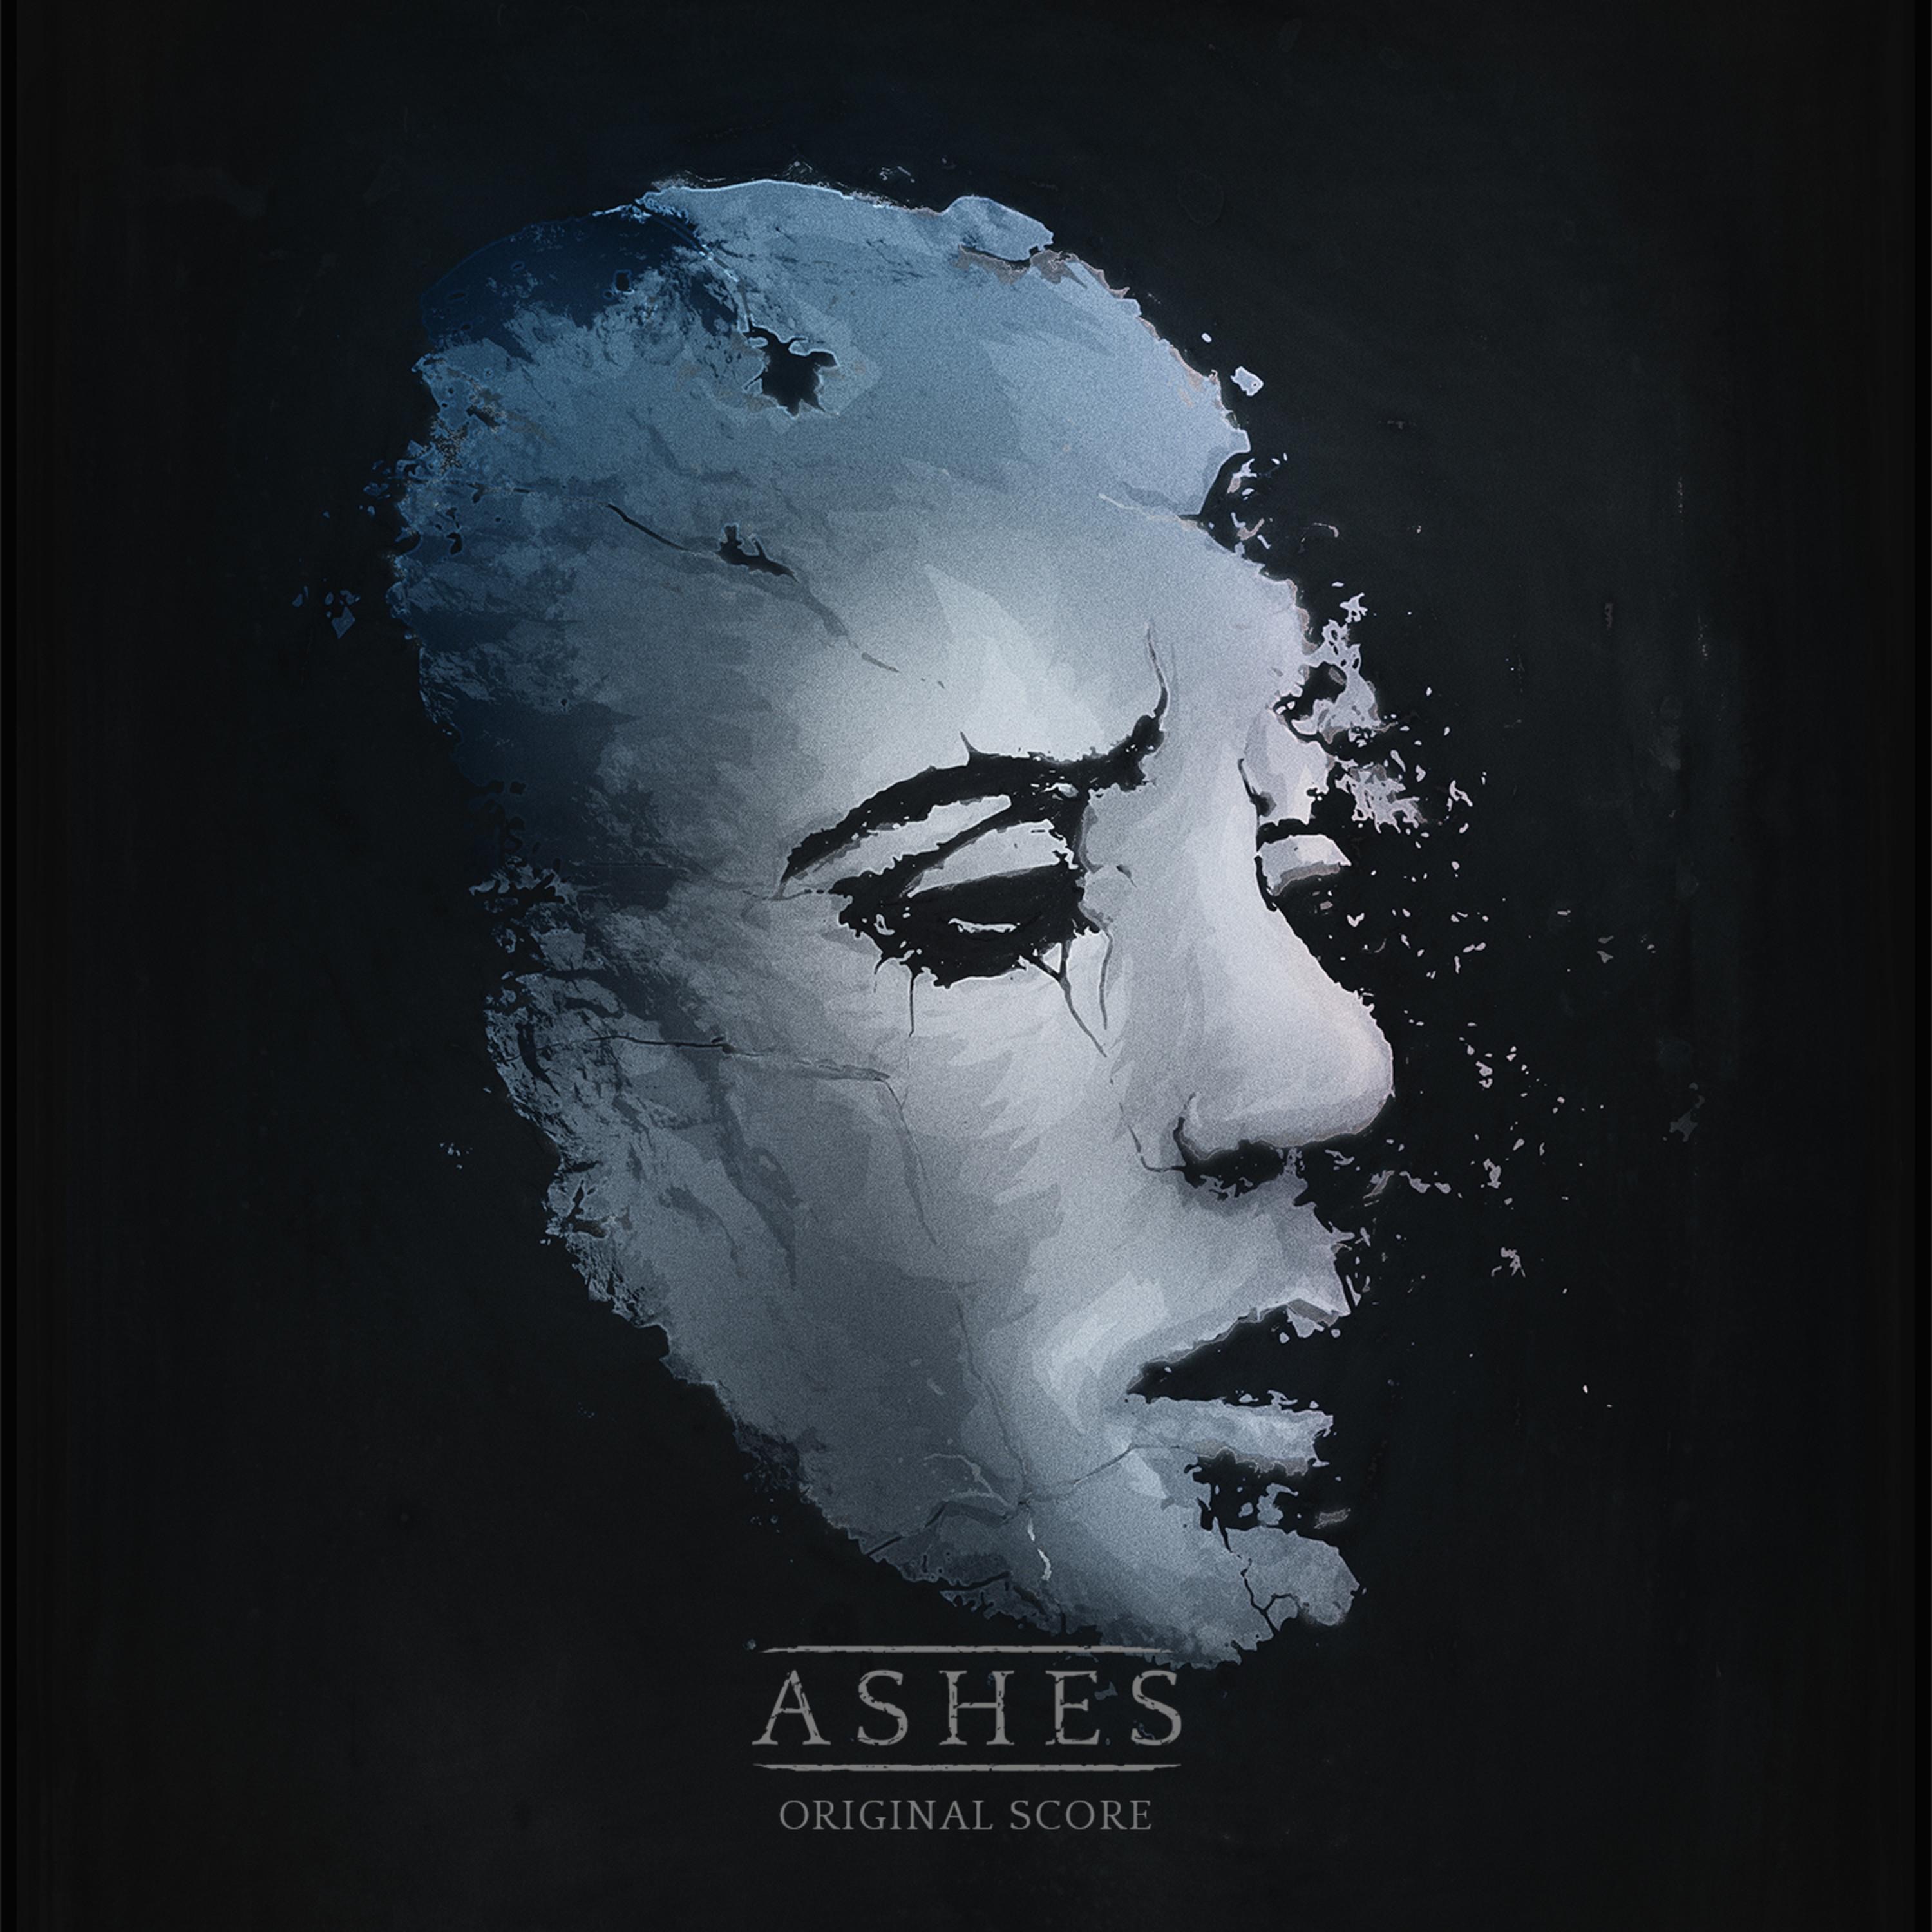 Bones ashes